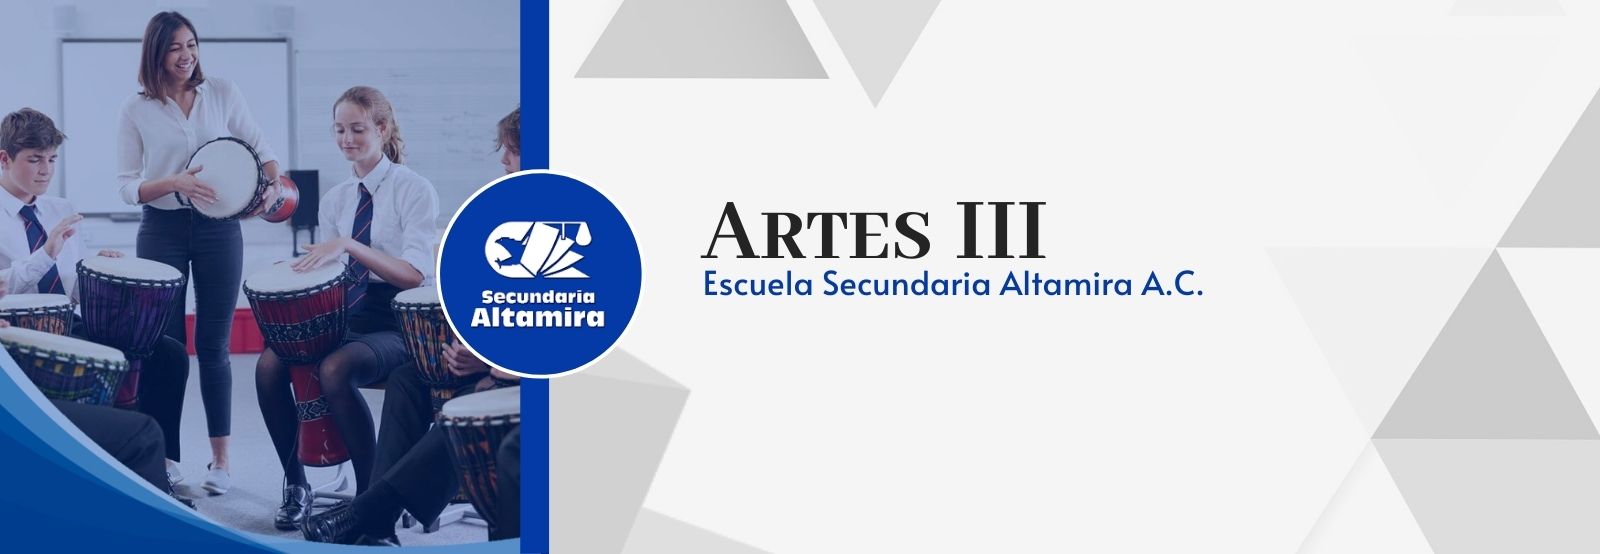 Artes III